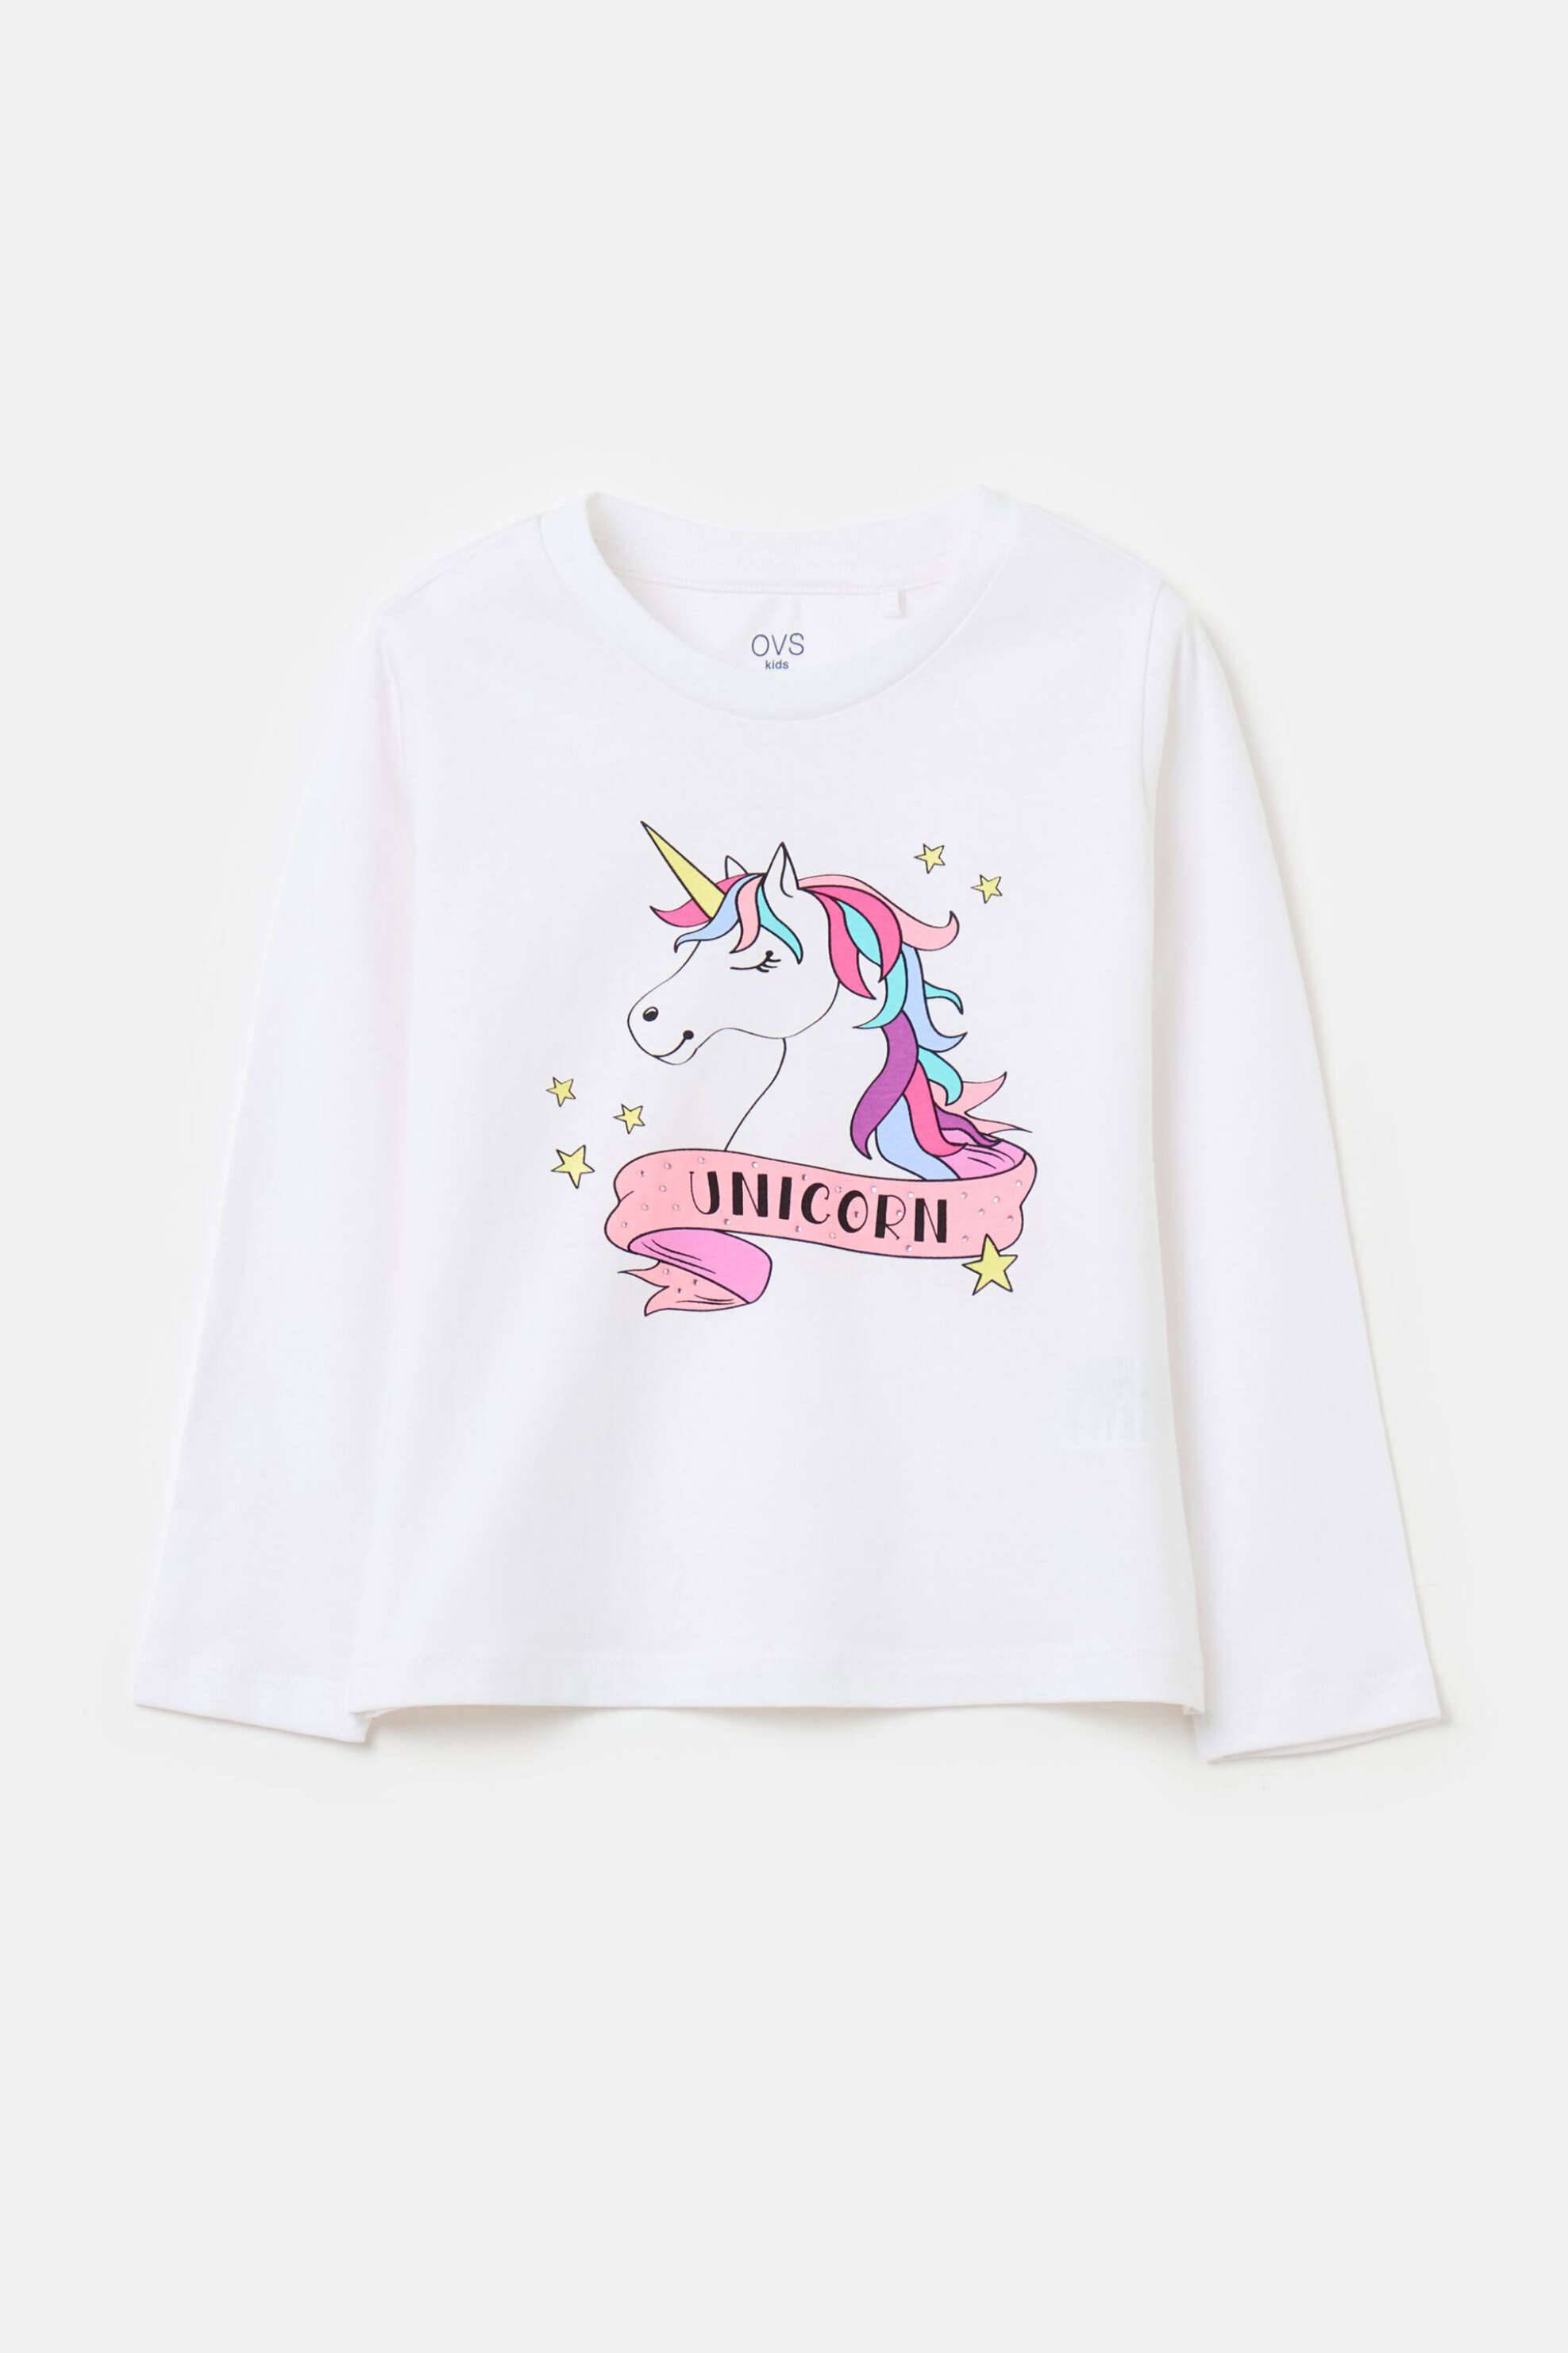 Παιδικά Ρούχα, Παπούτσια & Παιχνίδια > Παιδικά Ρούχα & Αξεσουάρ για Κορίτσια > Παιδικές Μπλούζες για Κορίτσια OVS παιδική μπλούζα μονόχρωμη βαμβακερή με unicorn print - 001970599 Λευκό